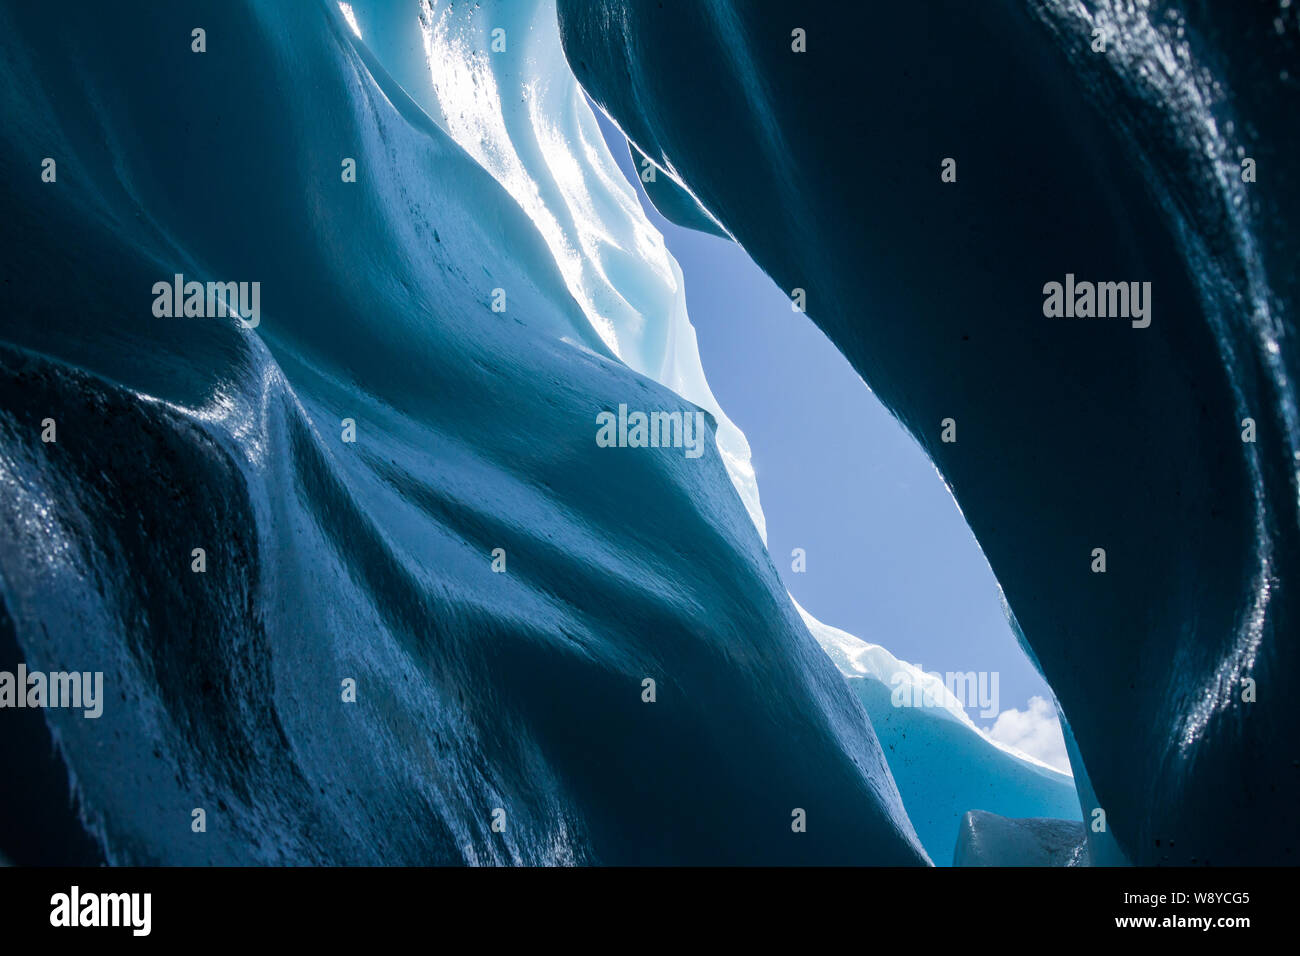 Hielo azul suave de un curvy crevasse amurallada en un glaciar alpino en Alaska. Foto de stock